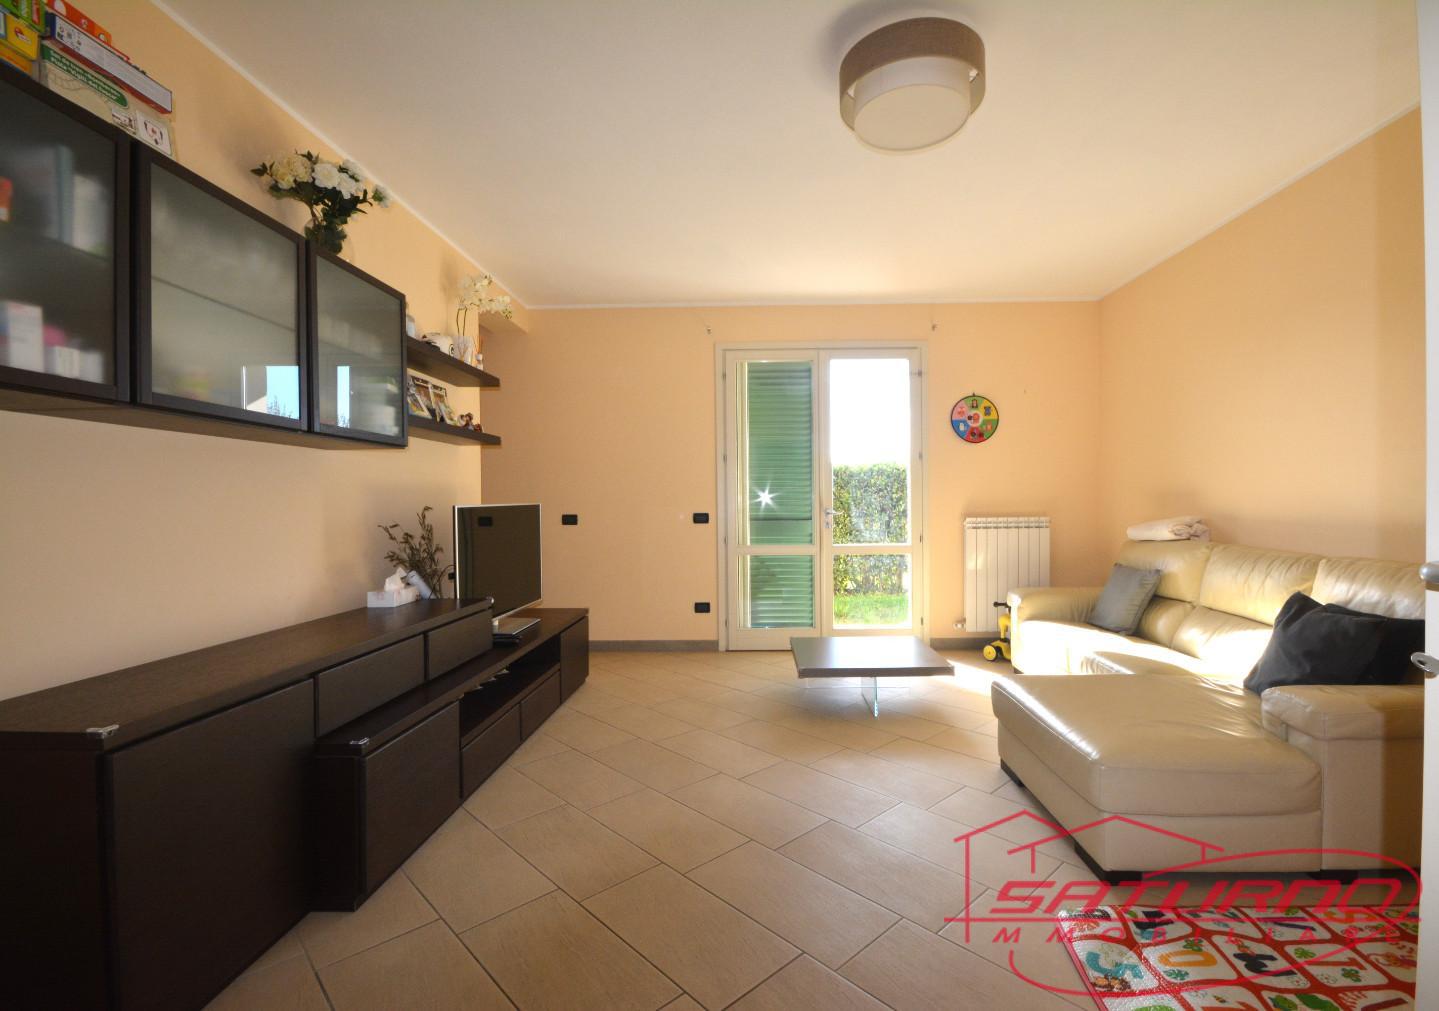 Villa Tri-Quadrifamiliare in vendita a Lucca, 5 locali, prezzo € 325.000 | PortaleAgenzieImmobiliari.it